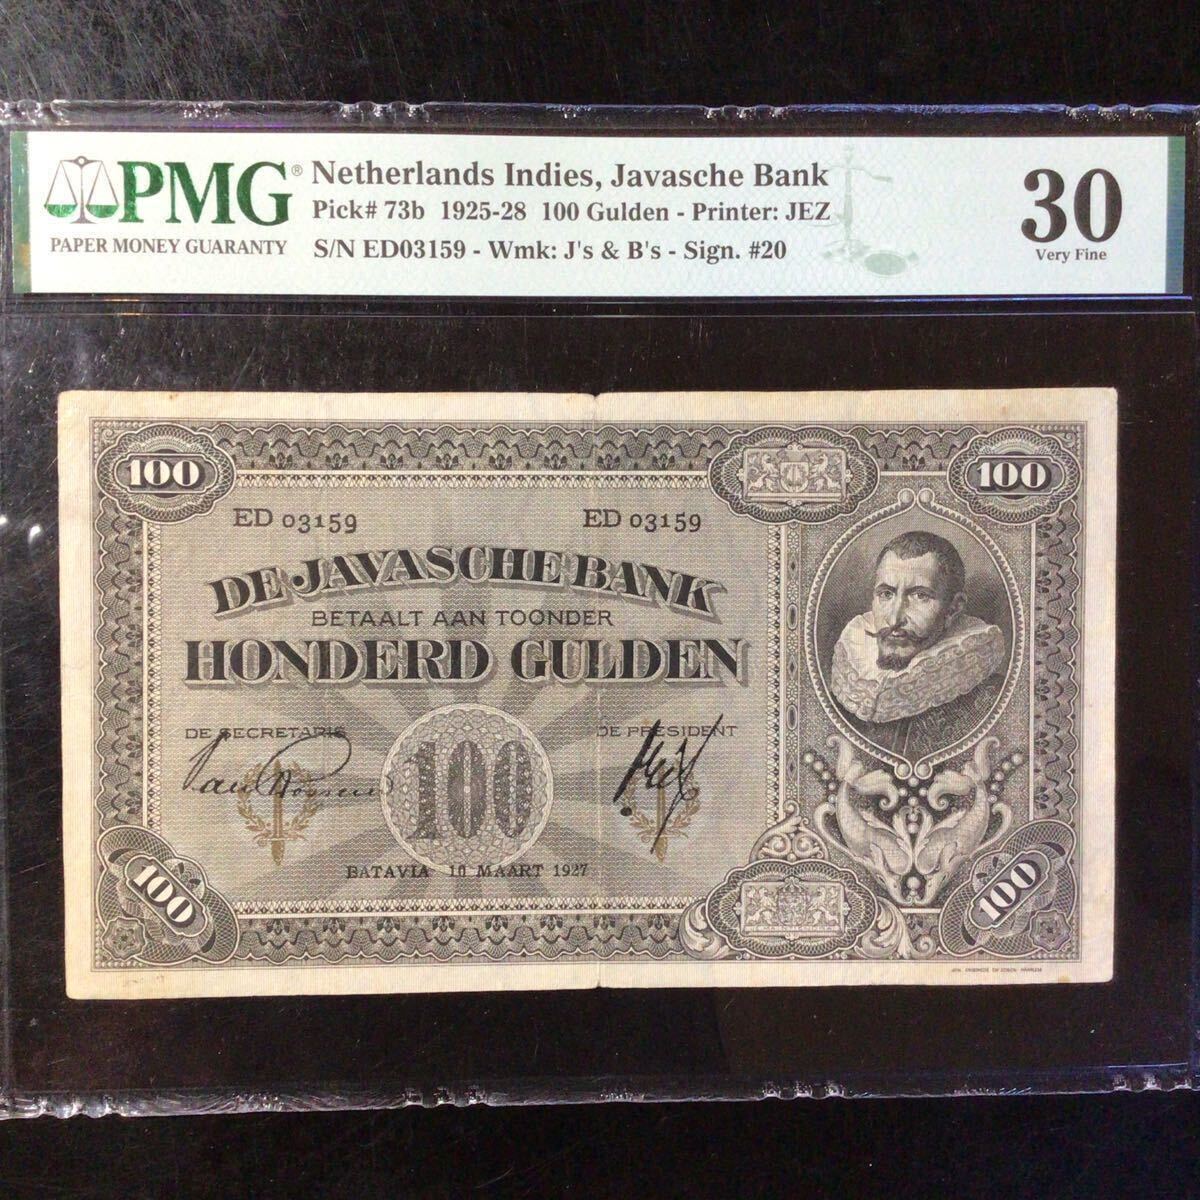 World Banknote Grading NETHERLANDS INDIES《Javasche Bank》 100 Gulden【1927】『PMG Grading Very Fine 30』_画像1